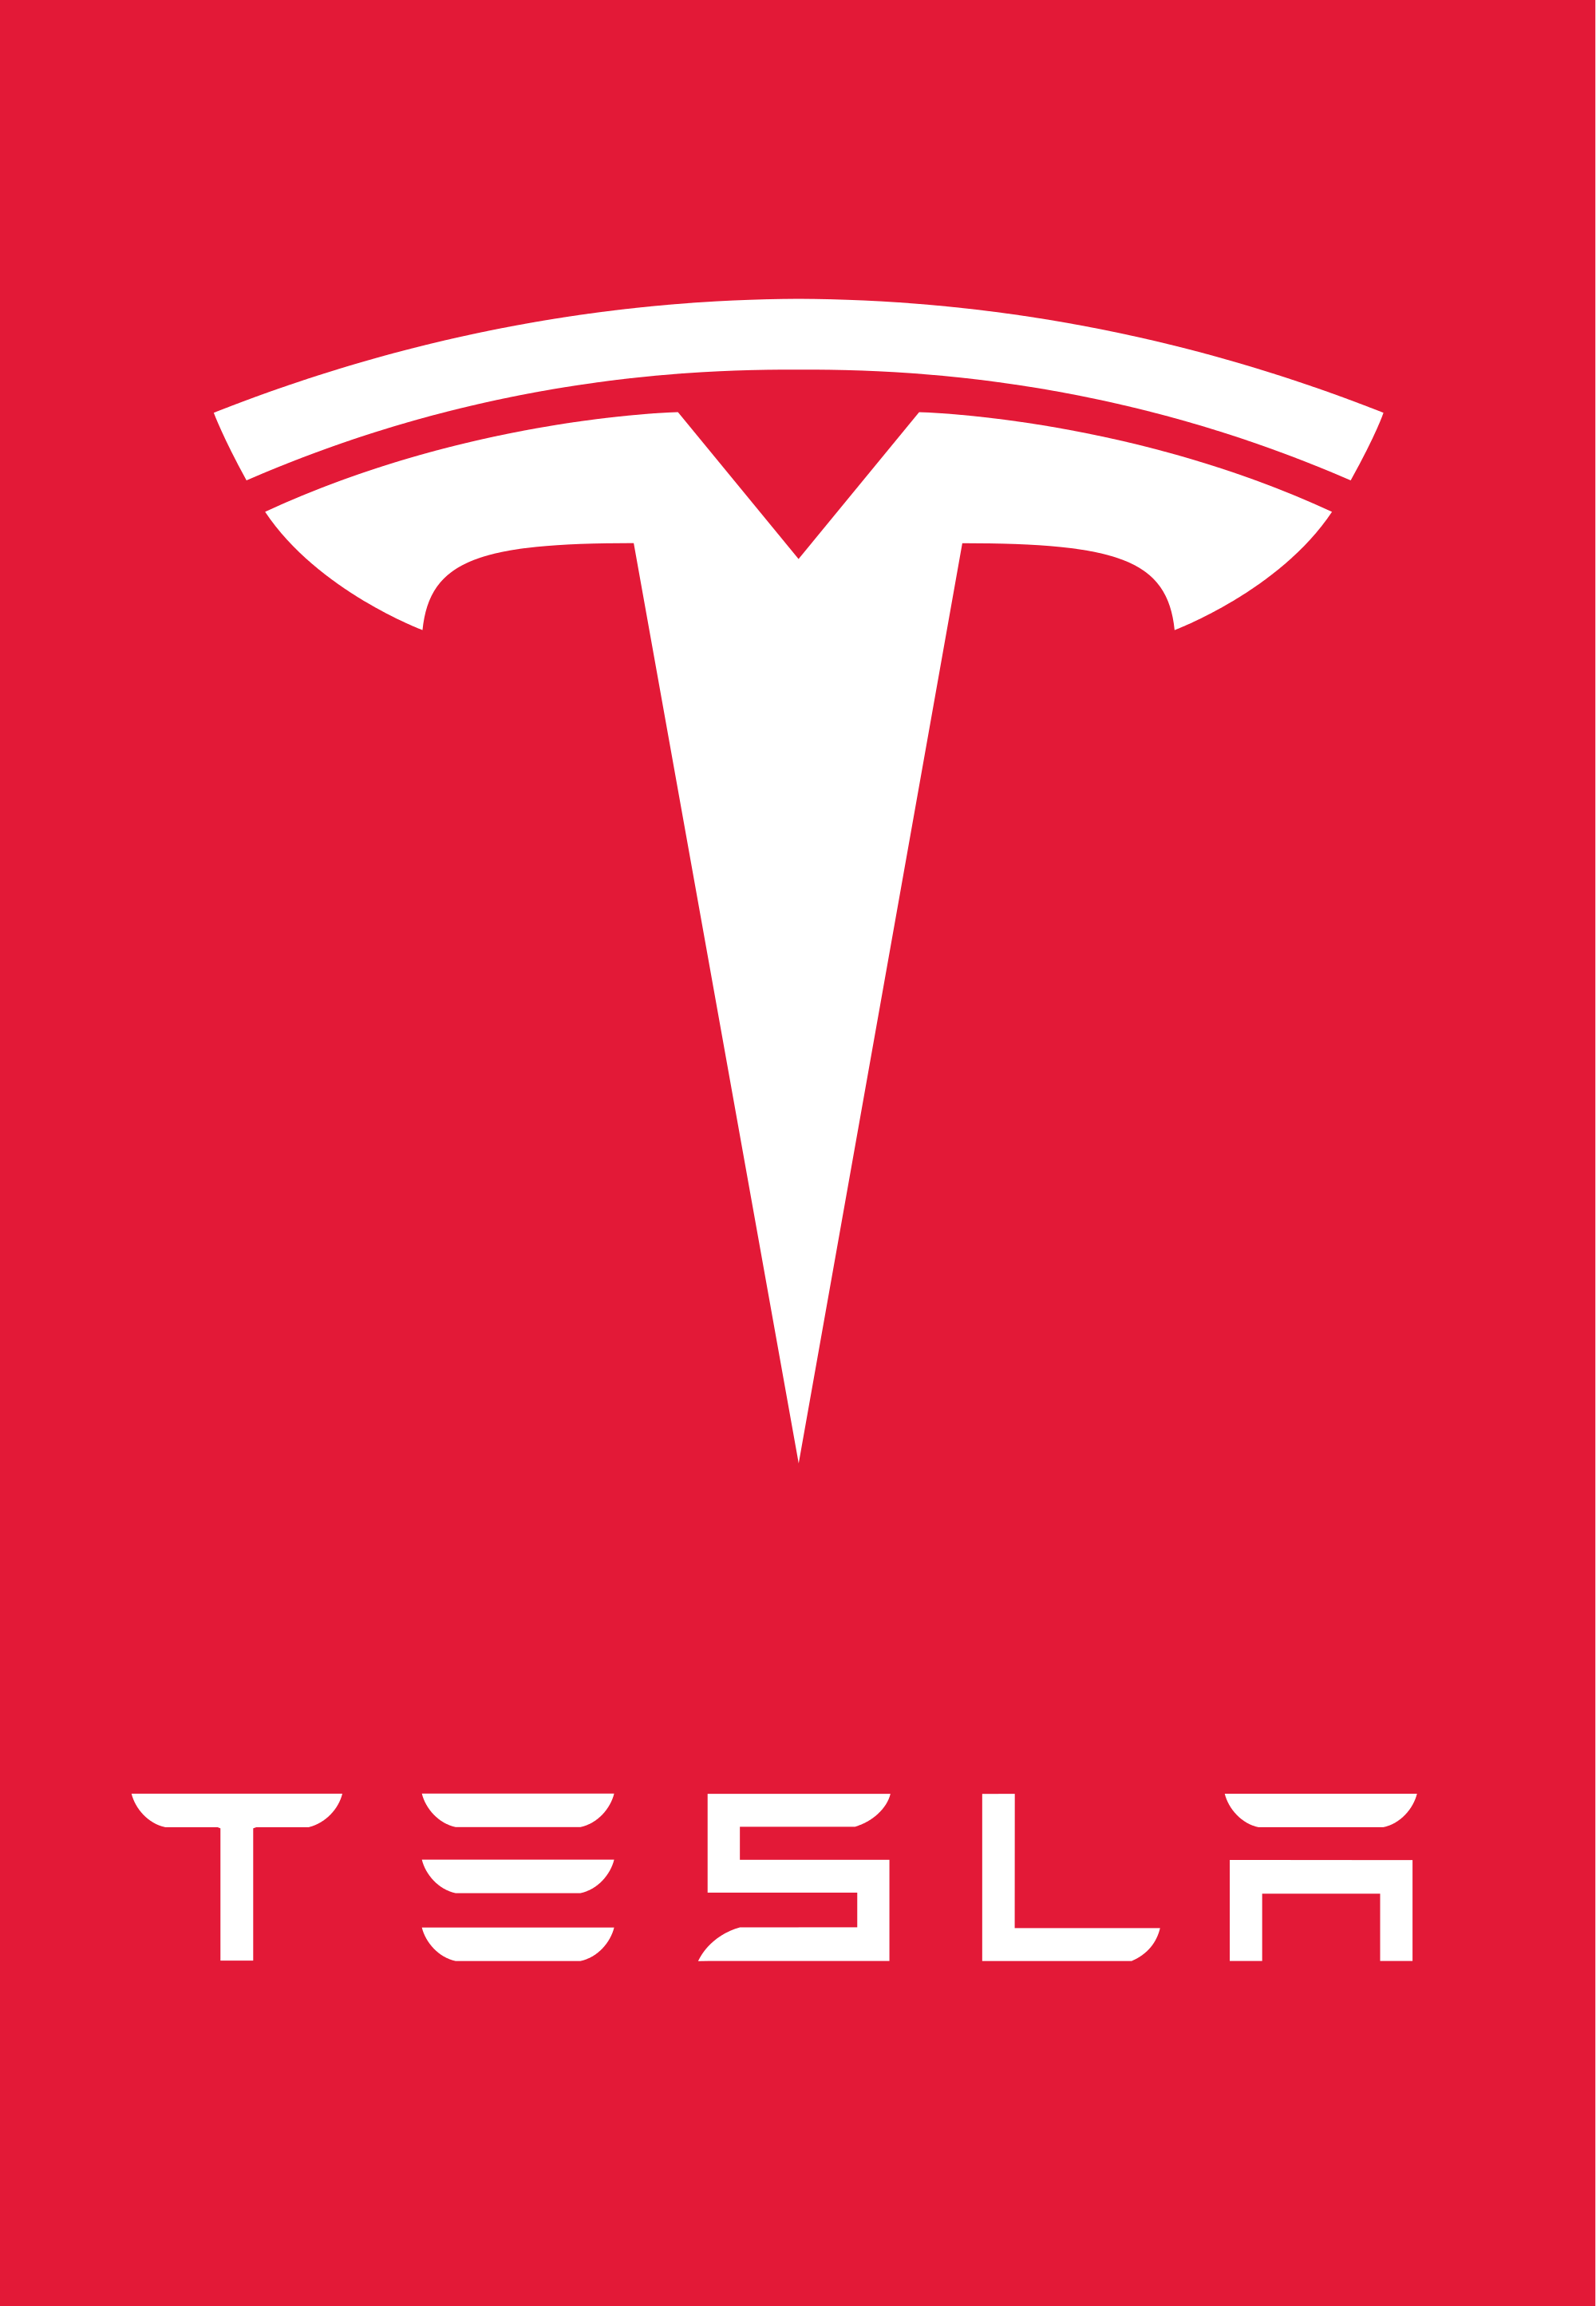 Red Letter Brand Names Logo - Tesla Logo, Tesla Car Symbol Meaning and History. Car Brand Names.com